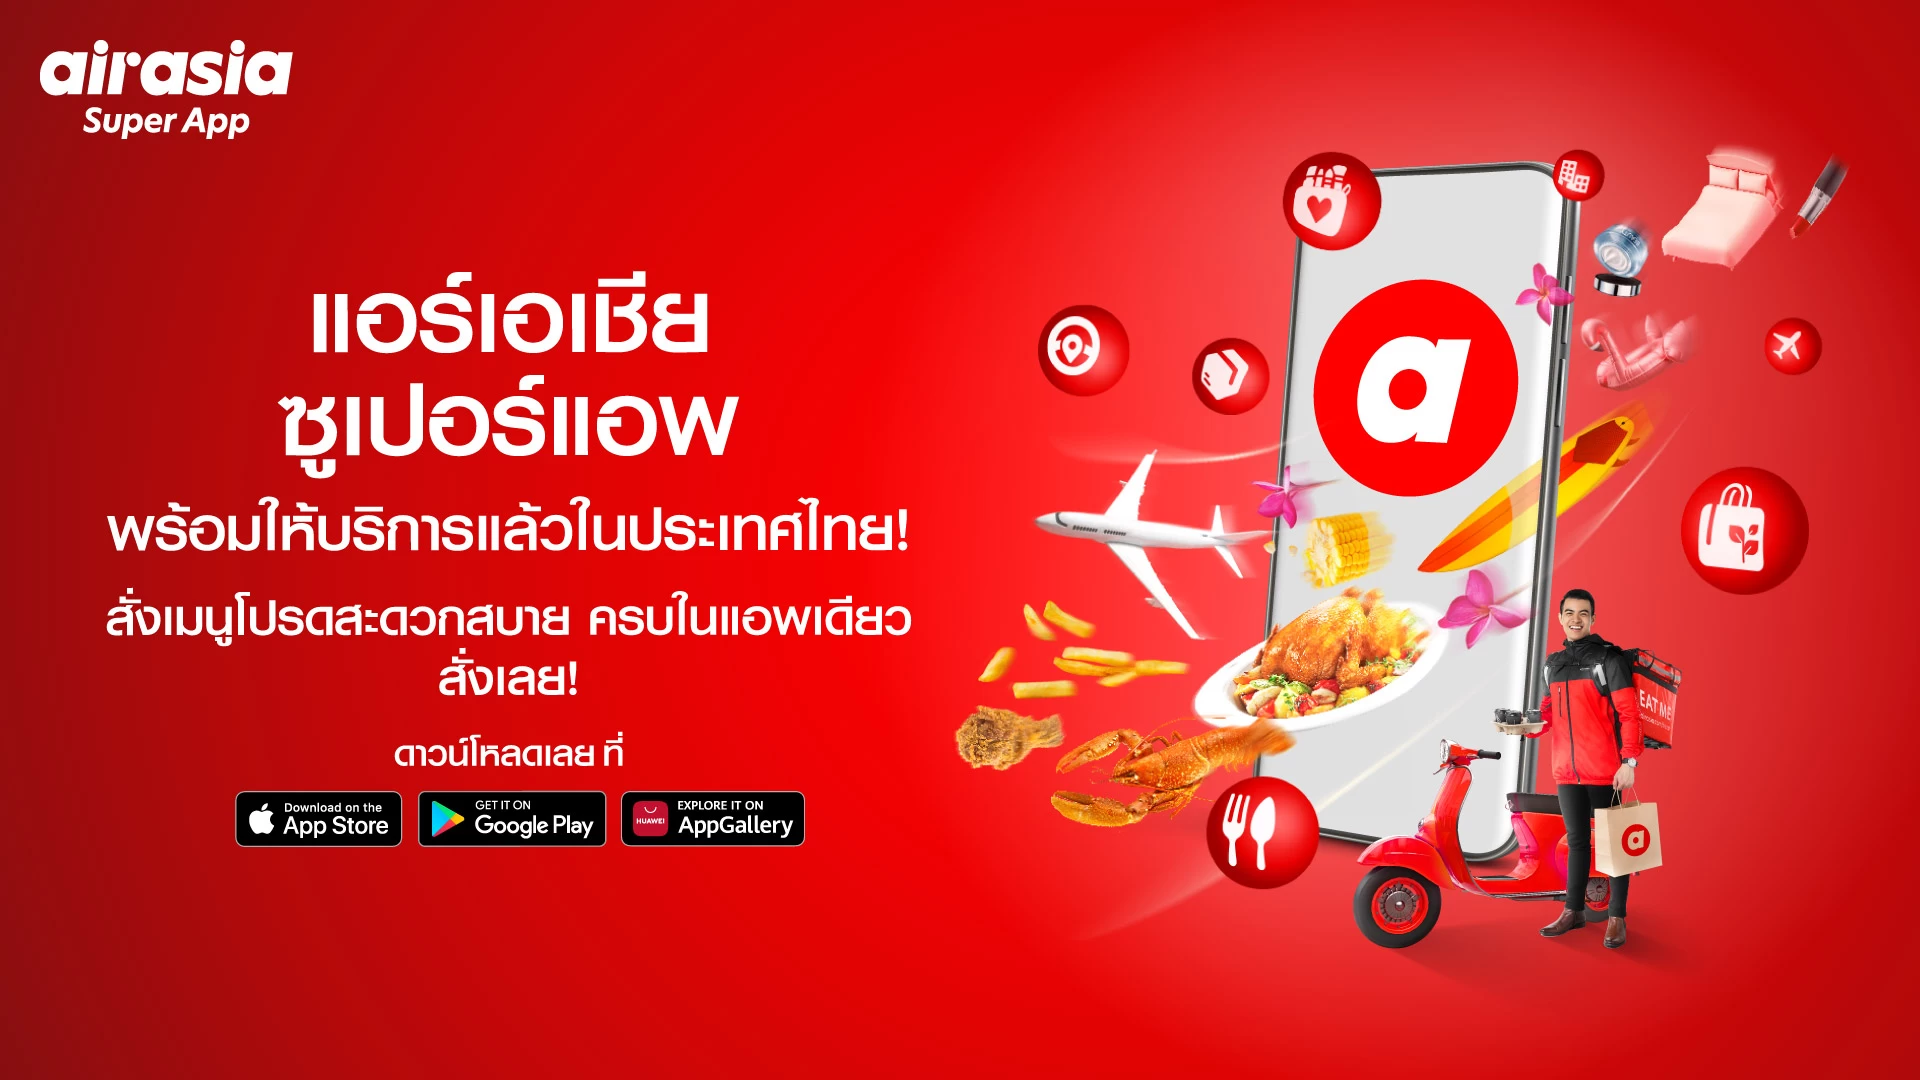 Newsroom Photo 1 | AirAsia | airasia ให้บริการเดลิเวอรี่ในไทย เปิดตัว airasia super app พร้อมบริการแรก ฟู้ดเดลิเวอรี่ มอบแคมเปญพิเศษแจกฟรี! 30,000 มื้อ ตลอด 30 วัน